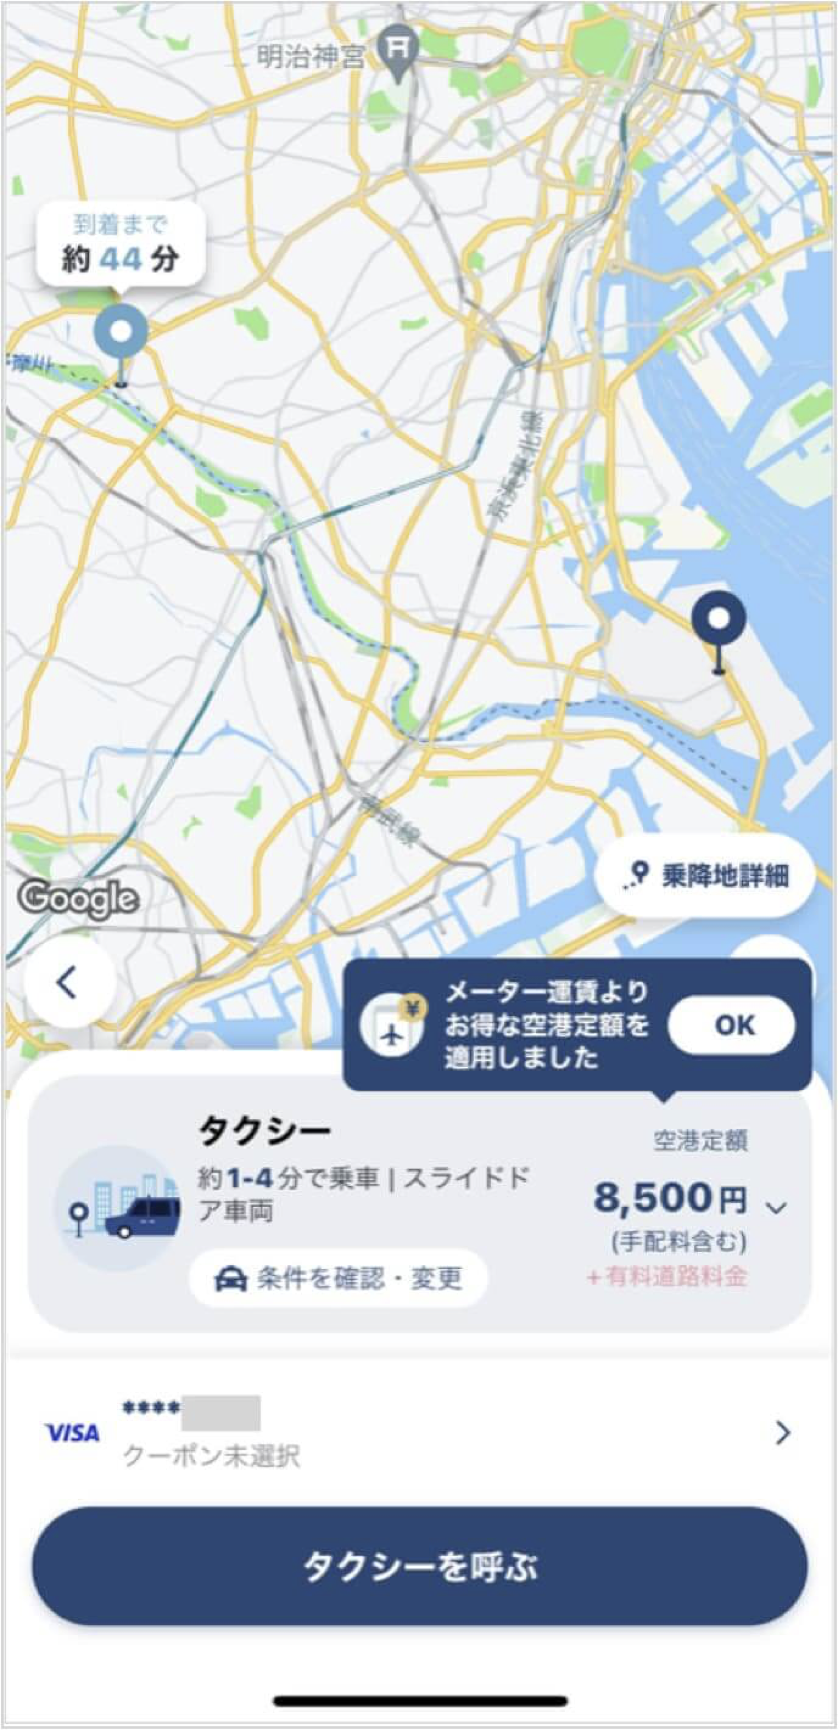 羽田空港から東京駅までのタクシー料金・所要時間まとめ